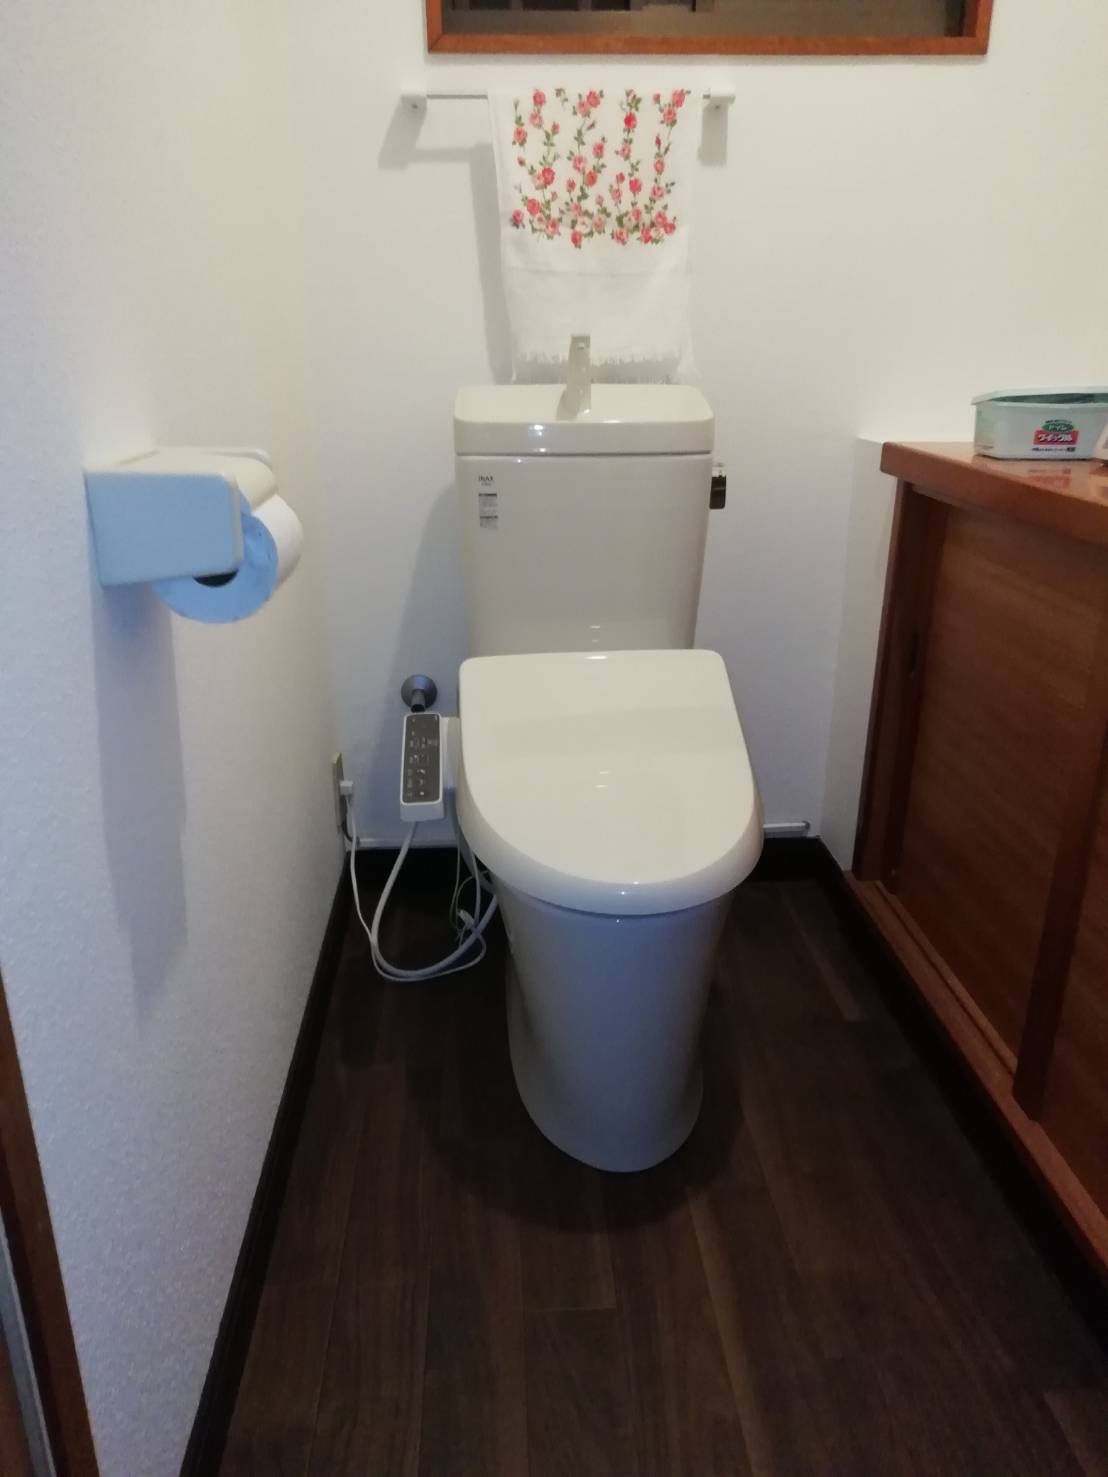 【愛知県名古屋市南区】トイレが2回も詰まった。トイレリフォーム。 【公式】水漏れ・つまりを修理するなら【水の